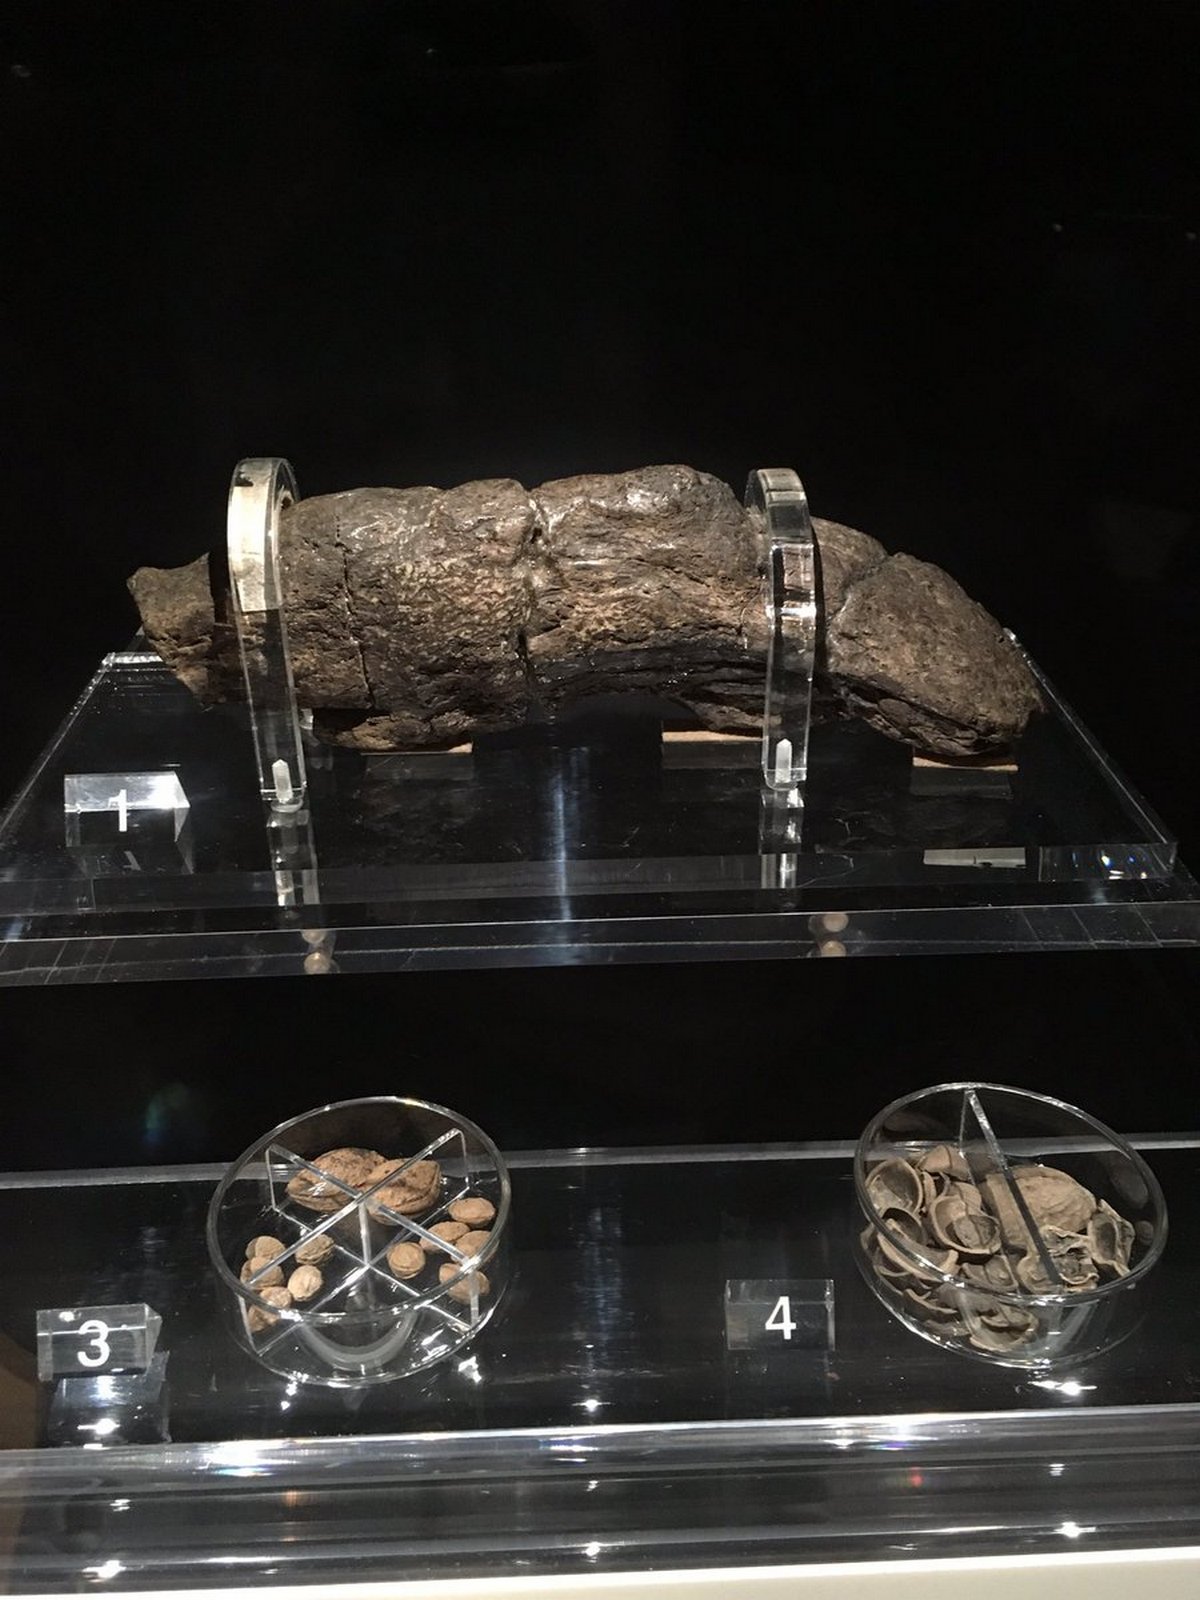 Le plus grand caca humain connu mesure 20 cm de long et remonte à un roi du 9e siècle